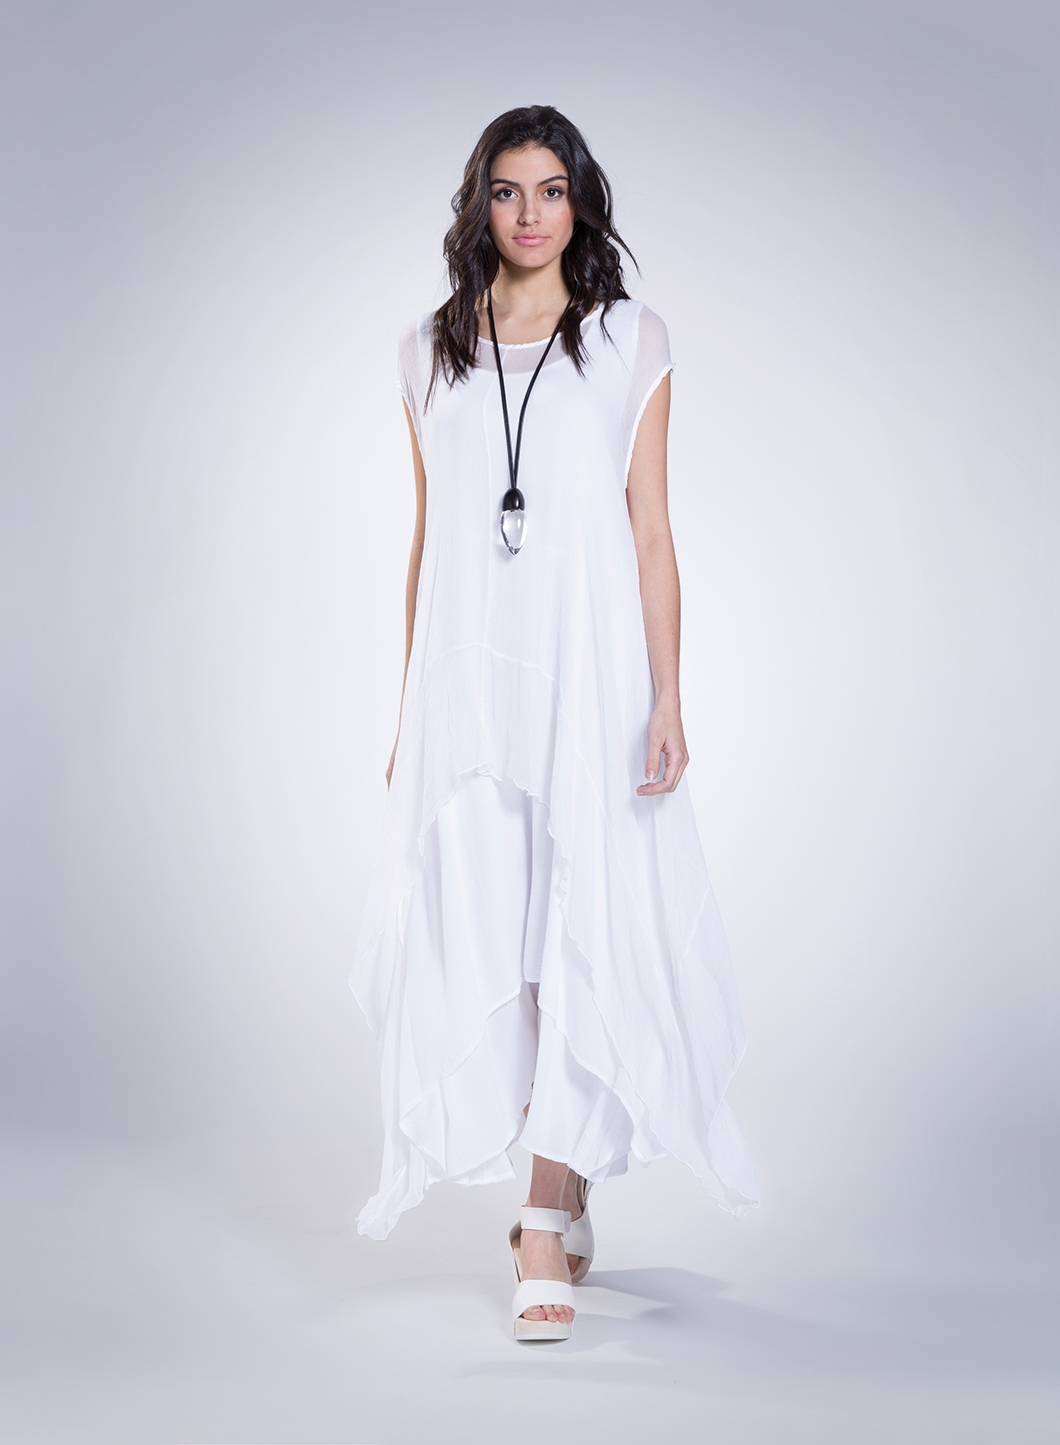 Silk white blouses for women dresses